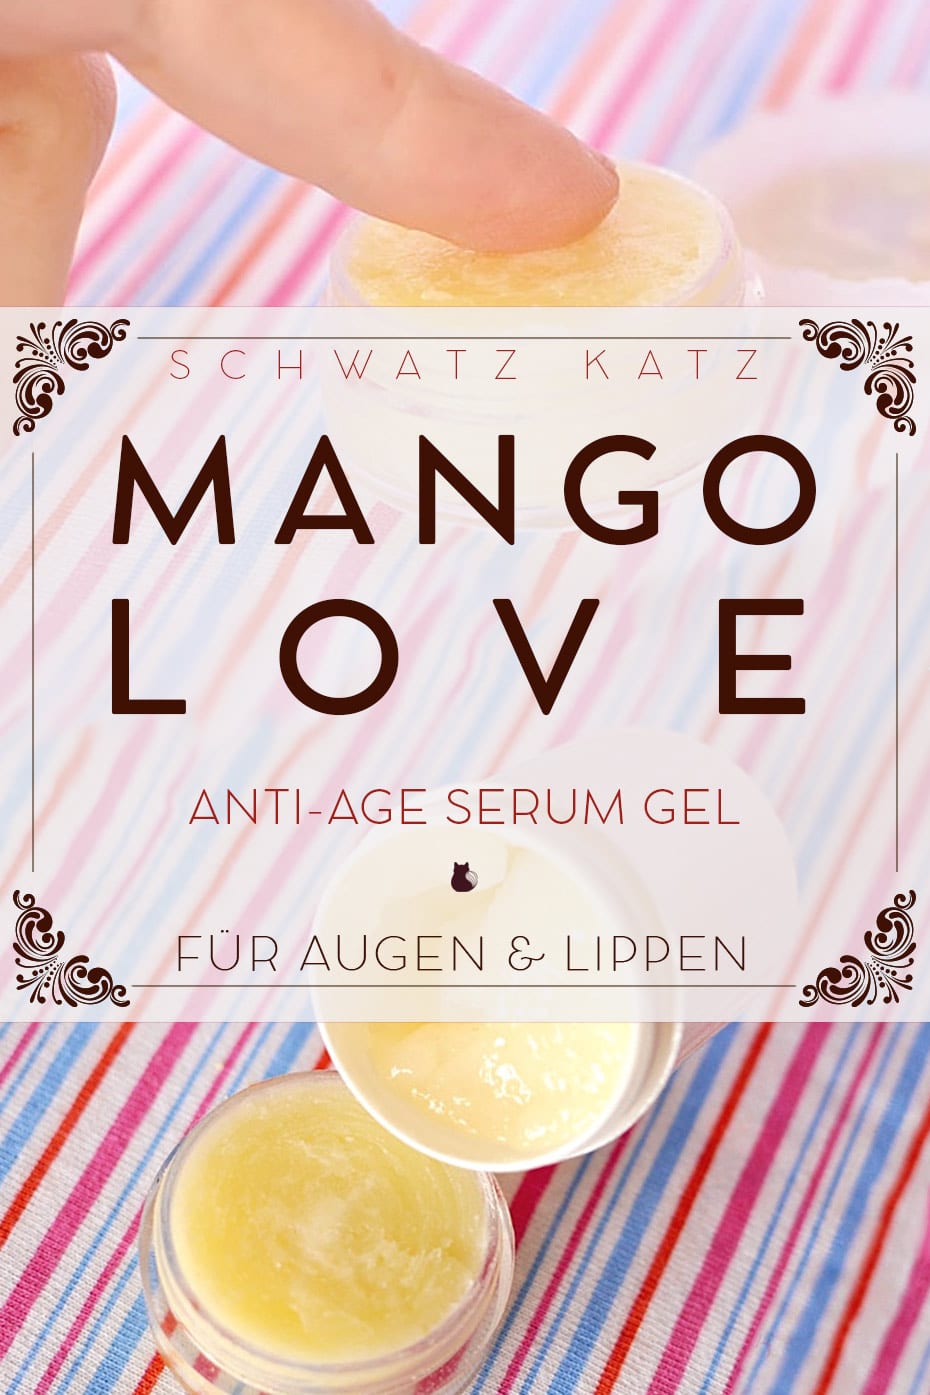 Anti Age Serum Gel und Lippenpflege mit Mangobutter | Schwatz Katz